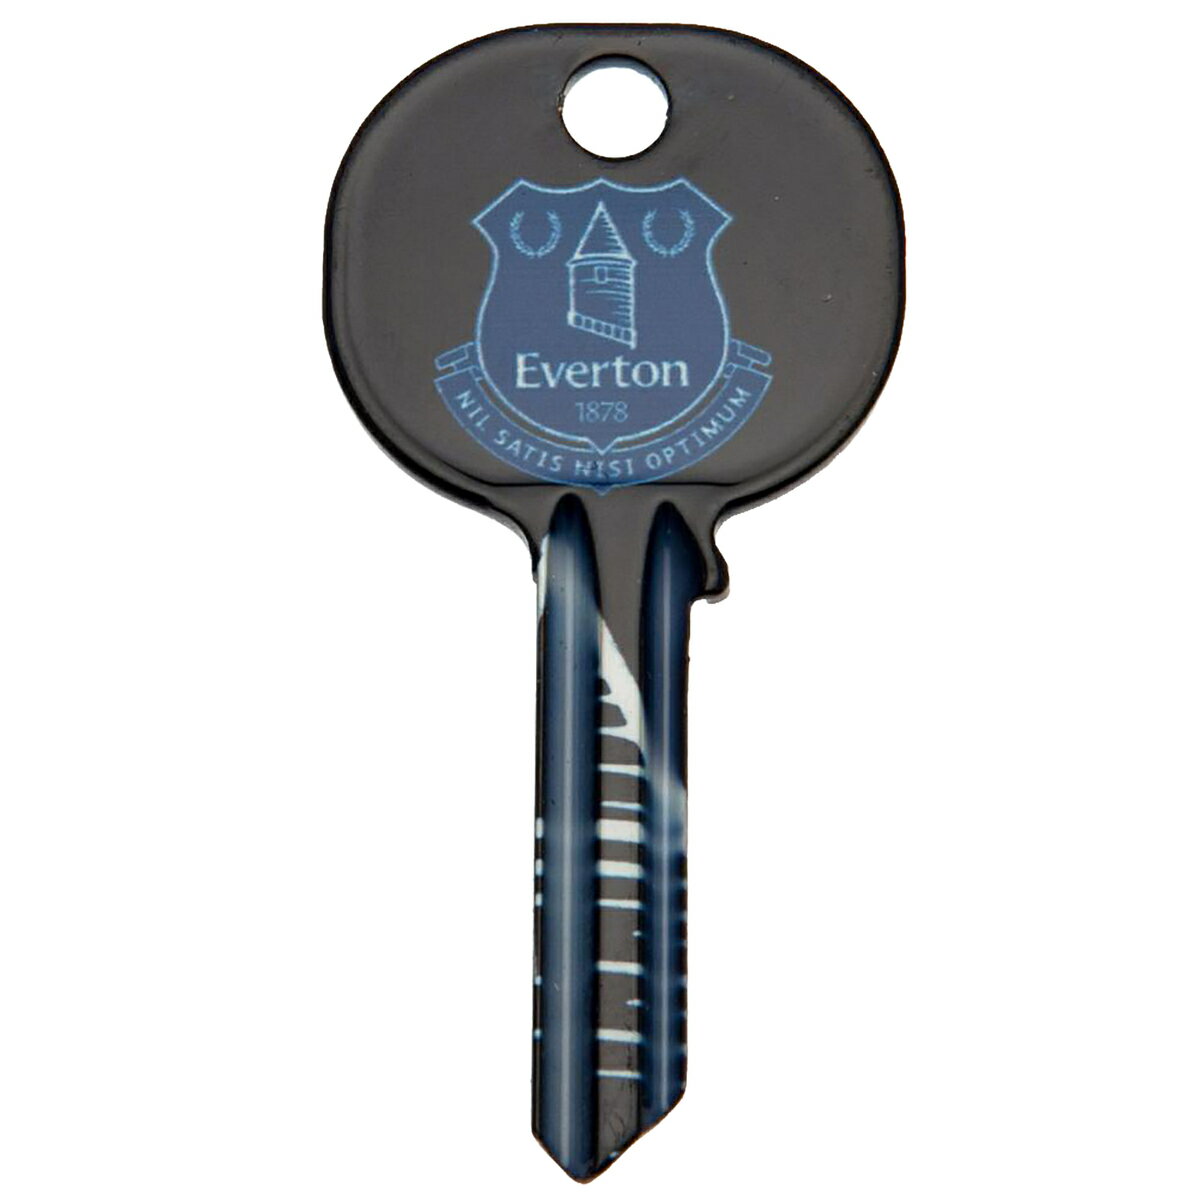 エバートン フットボールクラブ Everton FC オフィシャル商品 ブランクキー 鍵 チャーム 【海外通販】